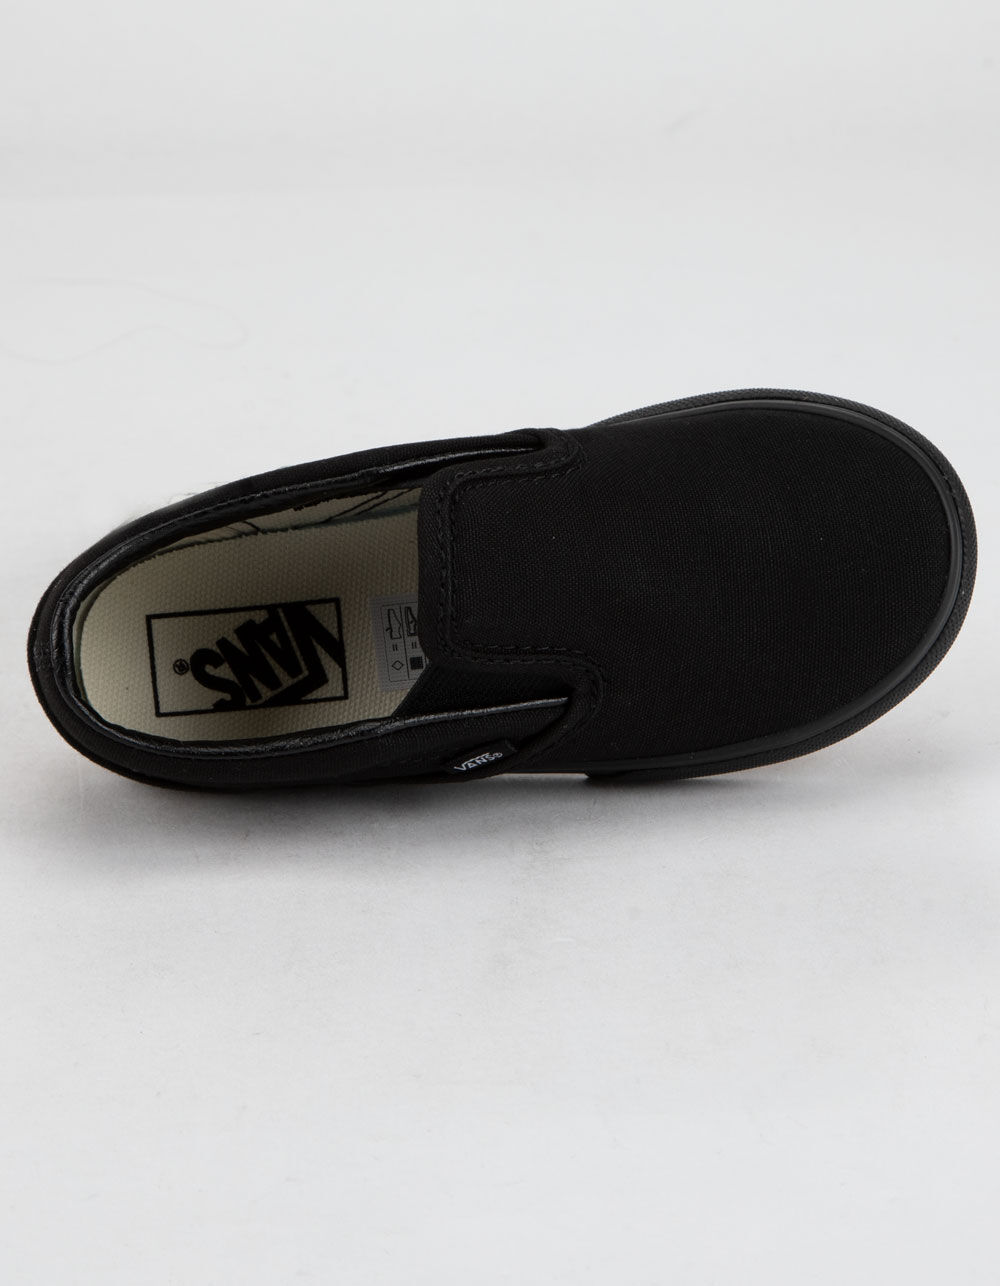 VANS Toddler Classic Slip-On Black Shoes image number 2